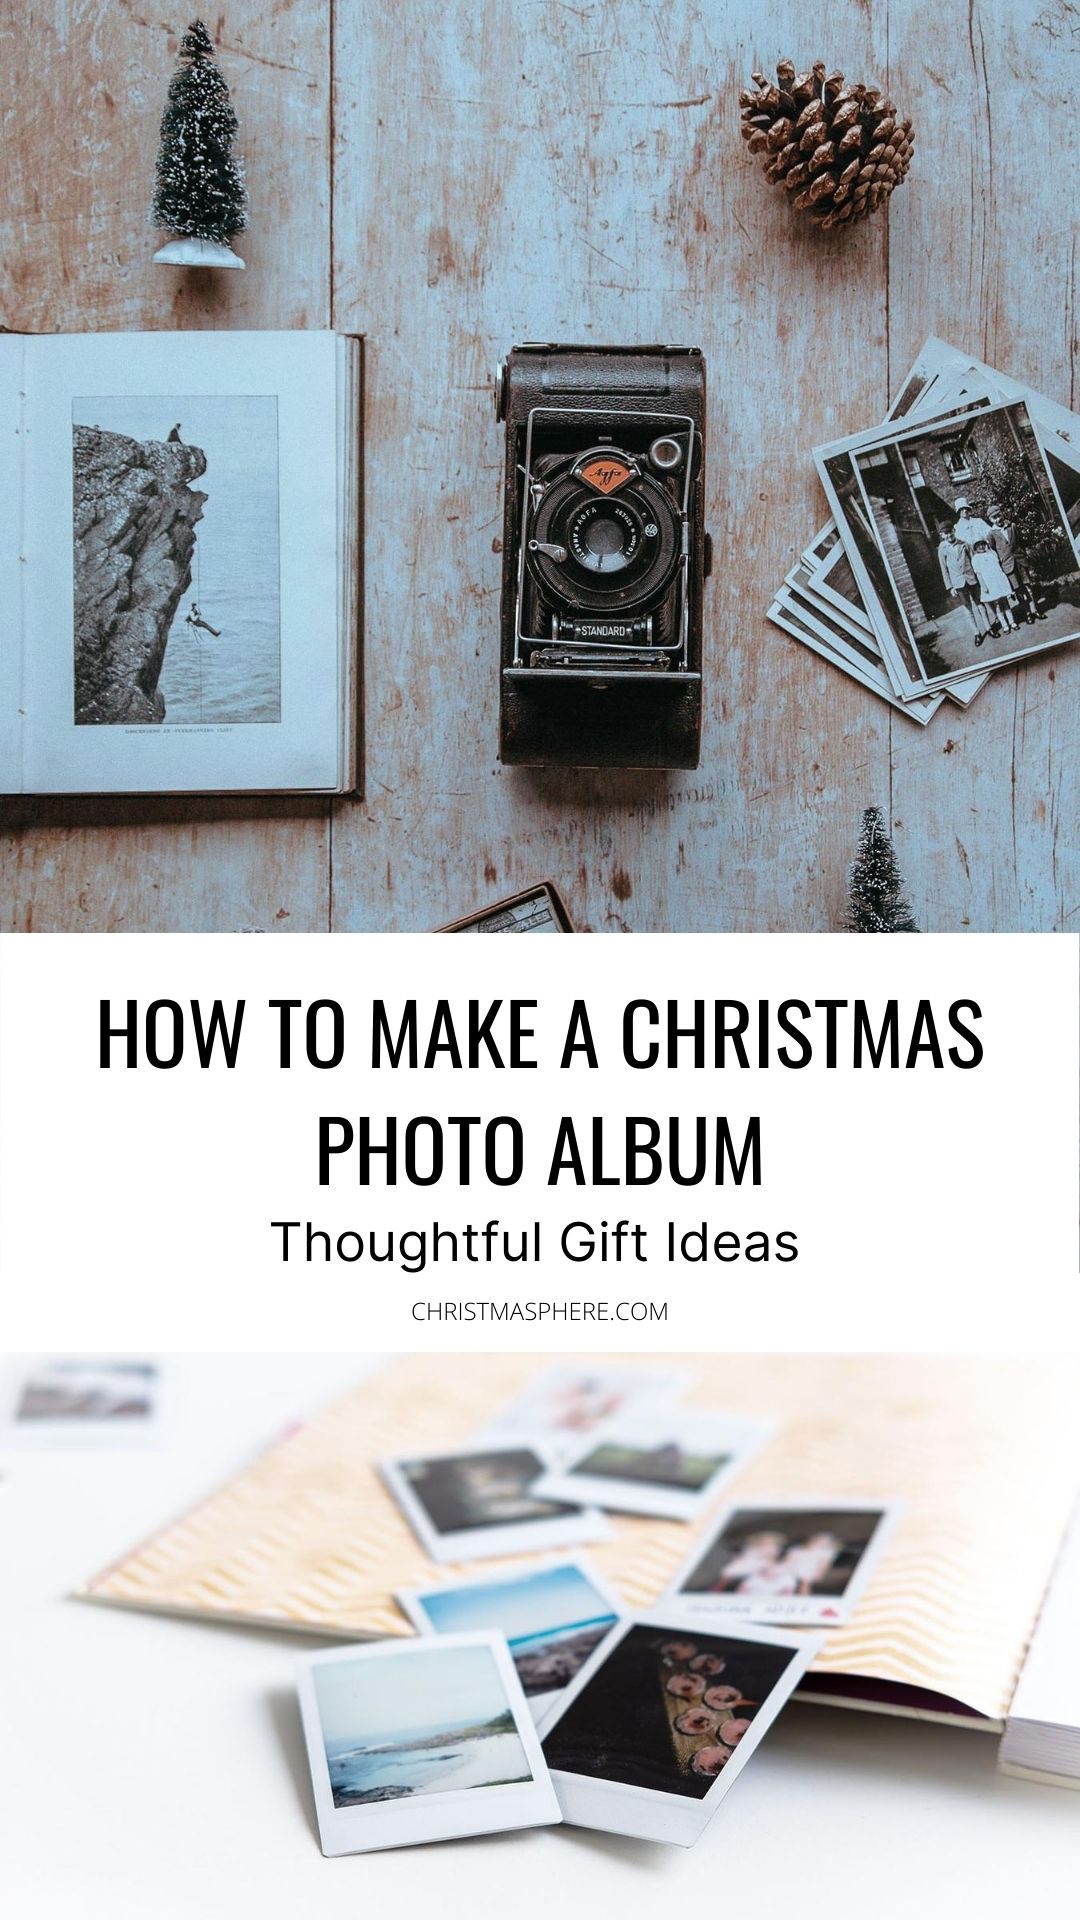 HOW TO MAKE A CHRISTMAS PHOTO ALBUM